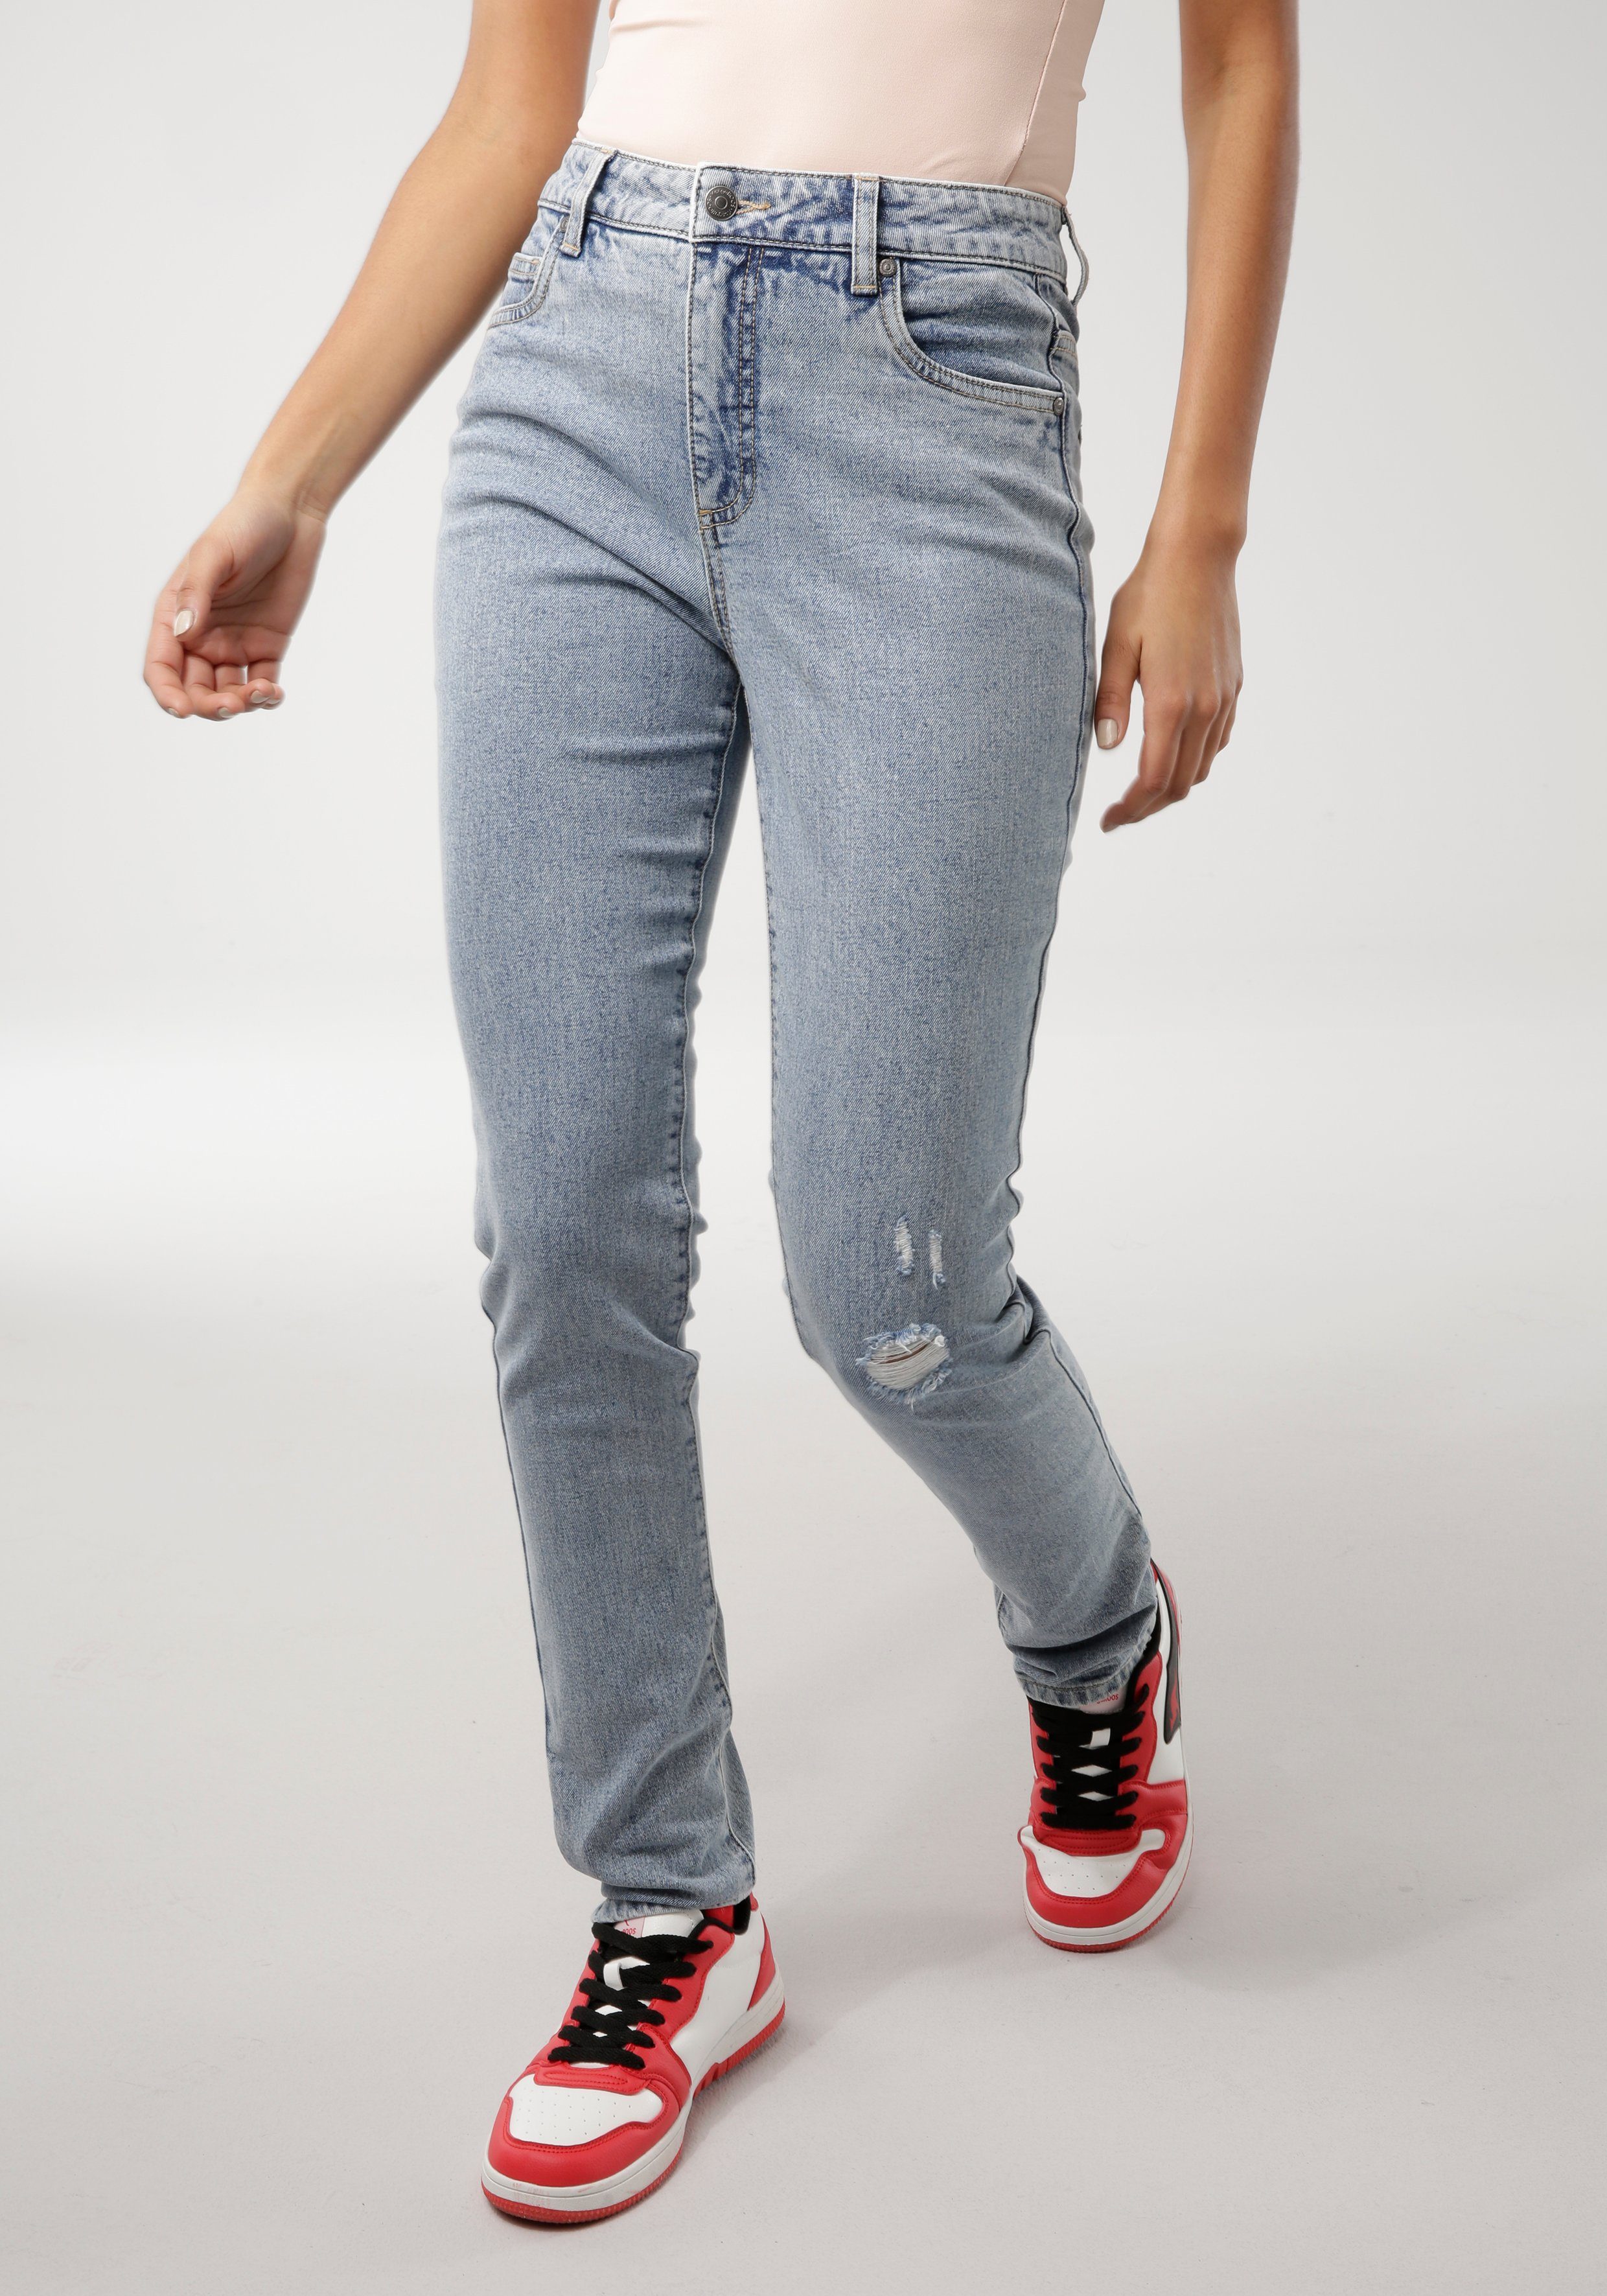 KangaROOS 5-Pocket-Jeans »BOYFRIEND« mit Destroyed-Effekt - NEUE KOLLEKTION  online kaufen | OTTO